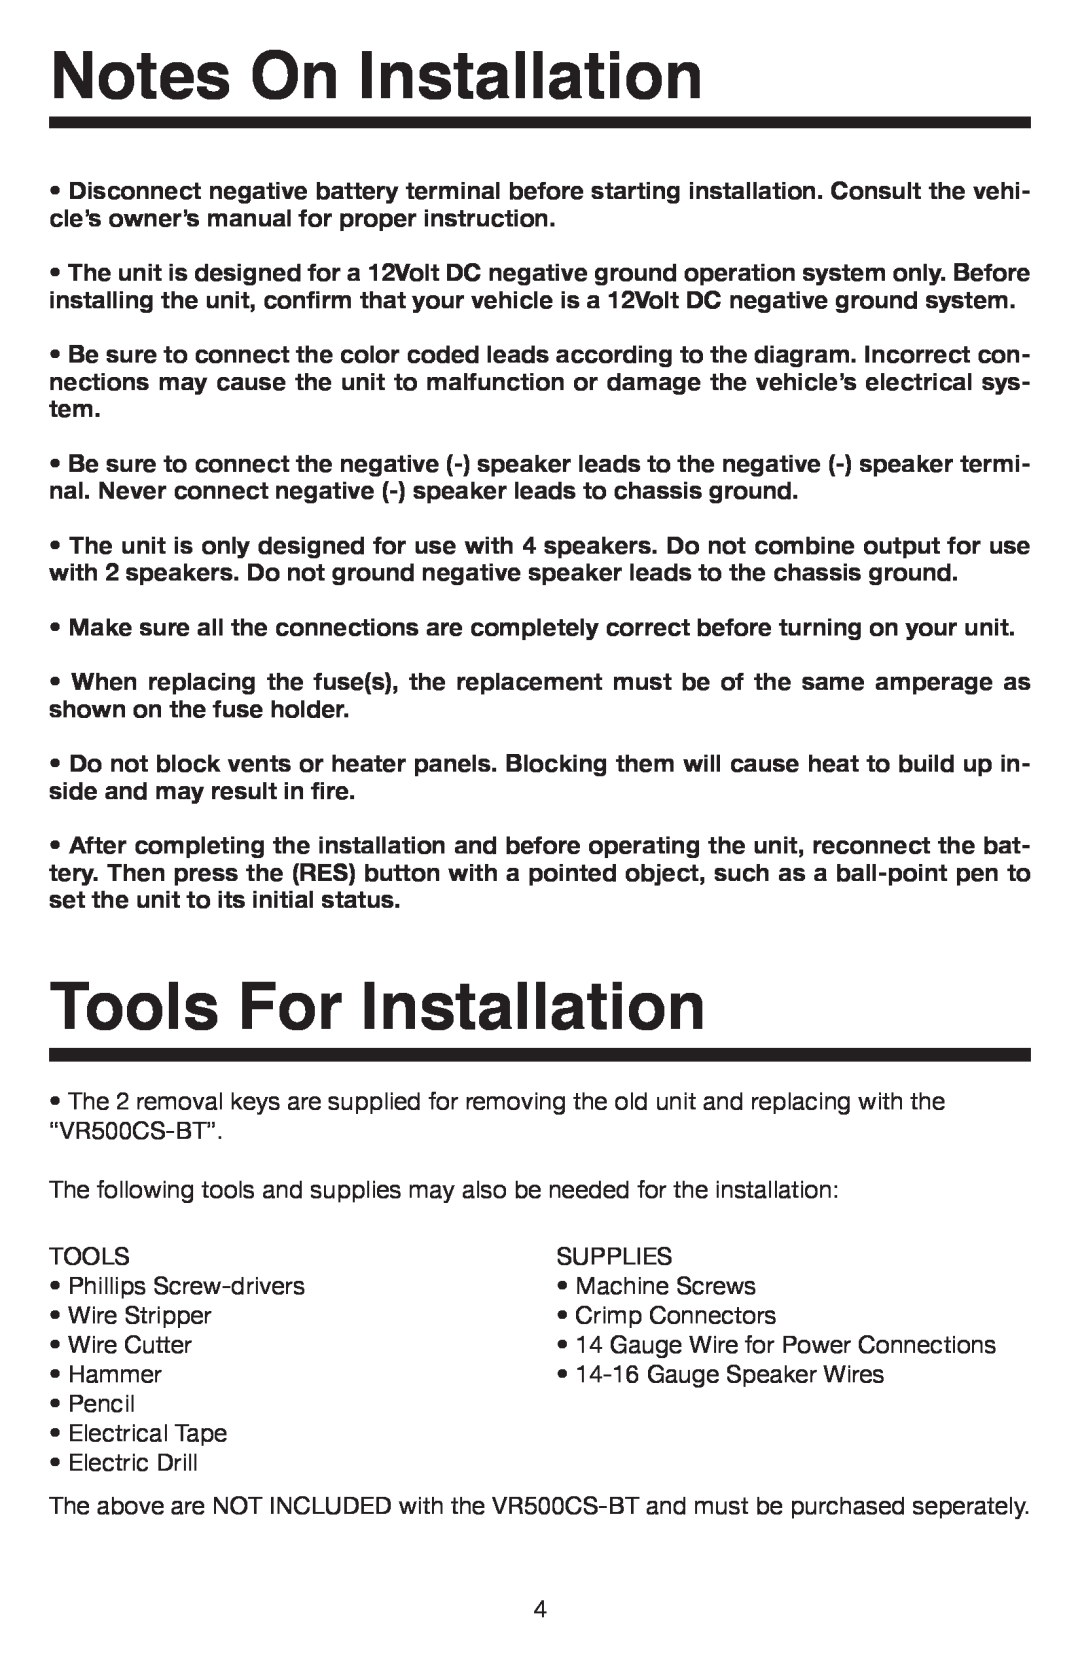 Elite VR500CS-BT manual Notes On Installation, Tools For Installation 